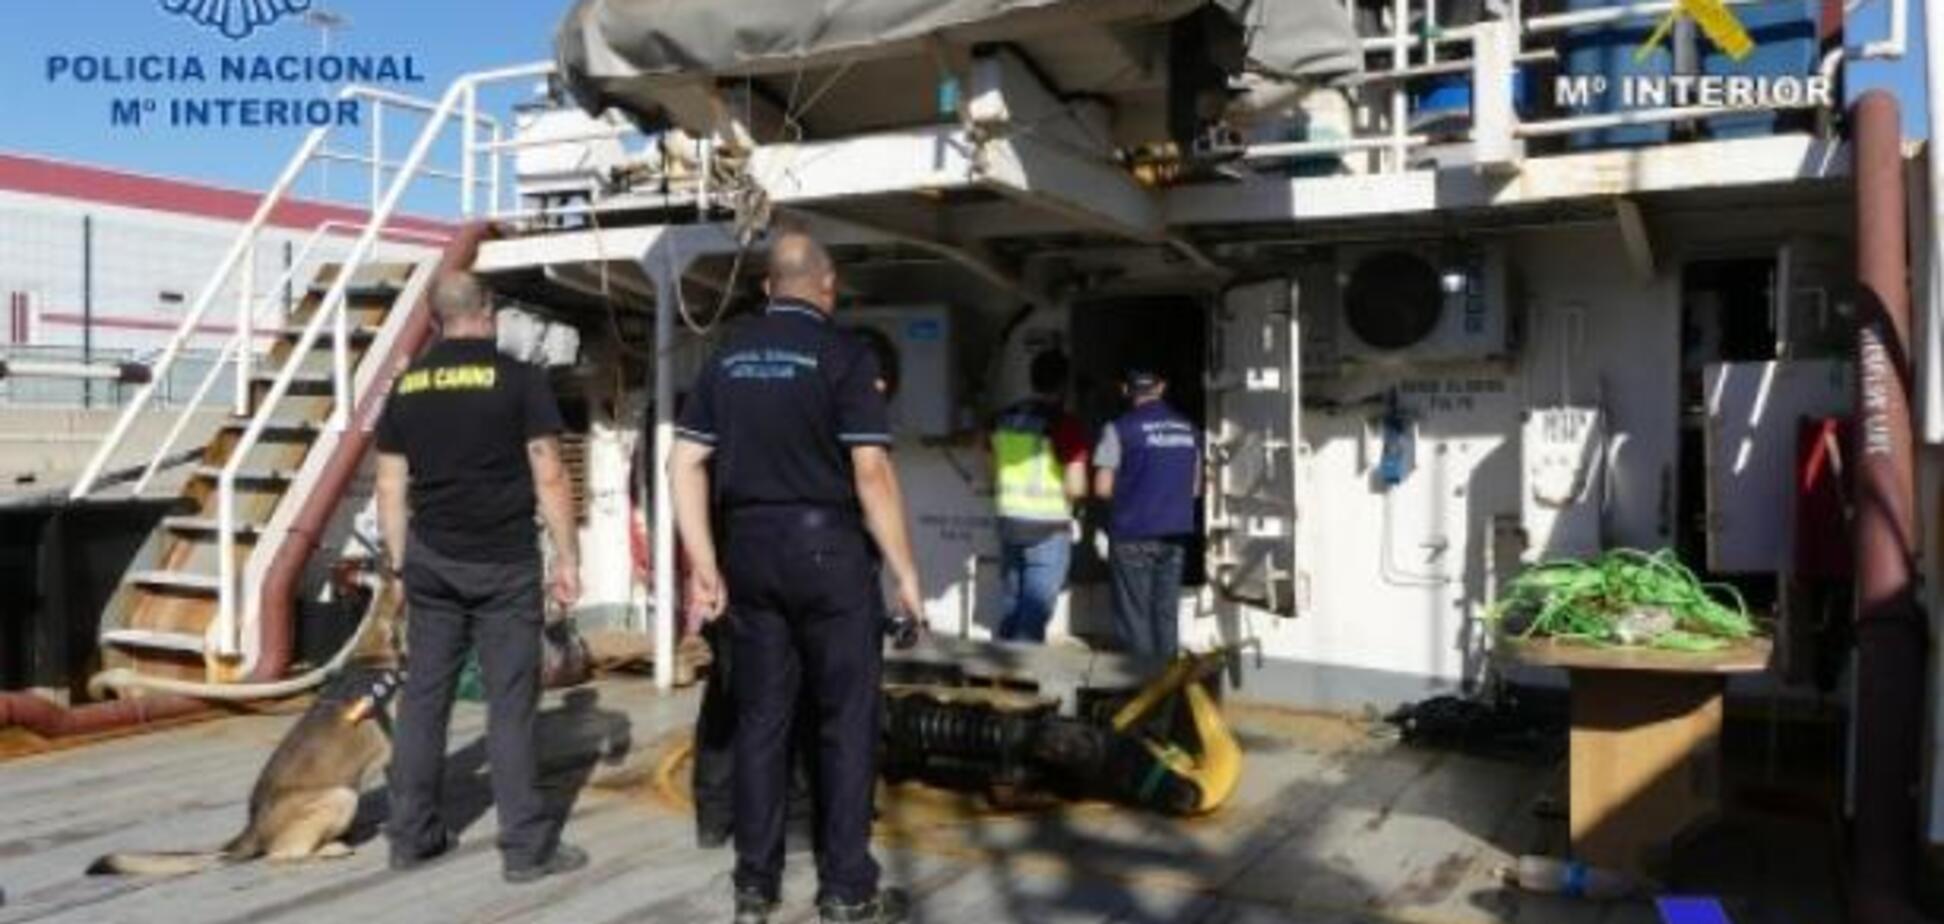 'Загашник' на 4 тонны: в Испании показали грандиозную перевозку кокаина